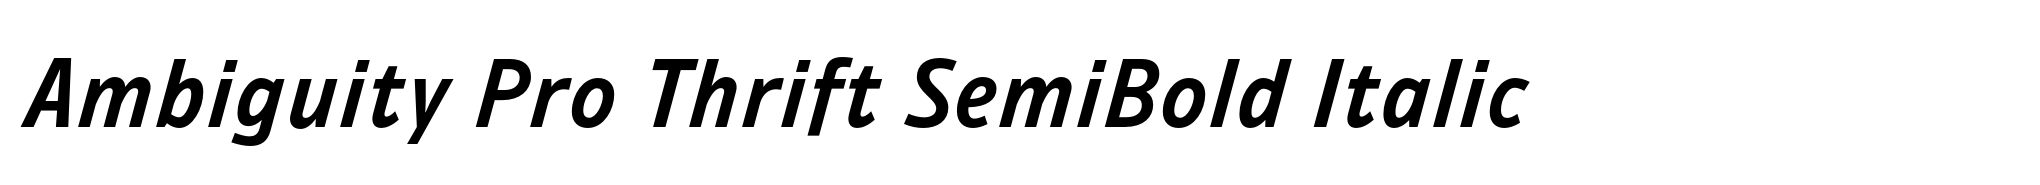 Ambiguity Pro Thrift SemiBold Italic image